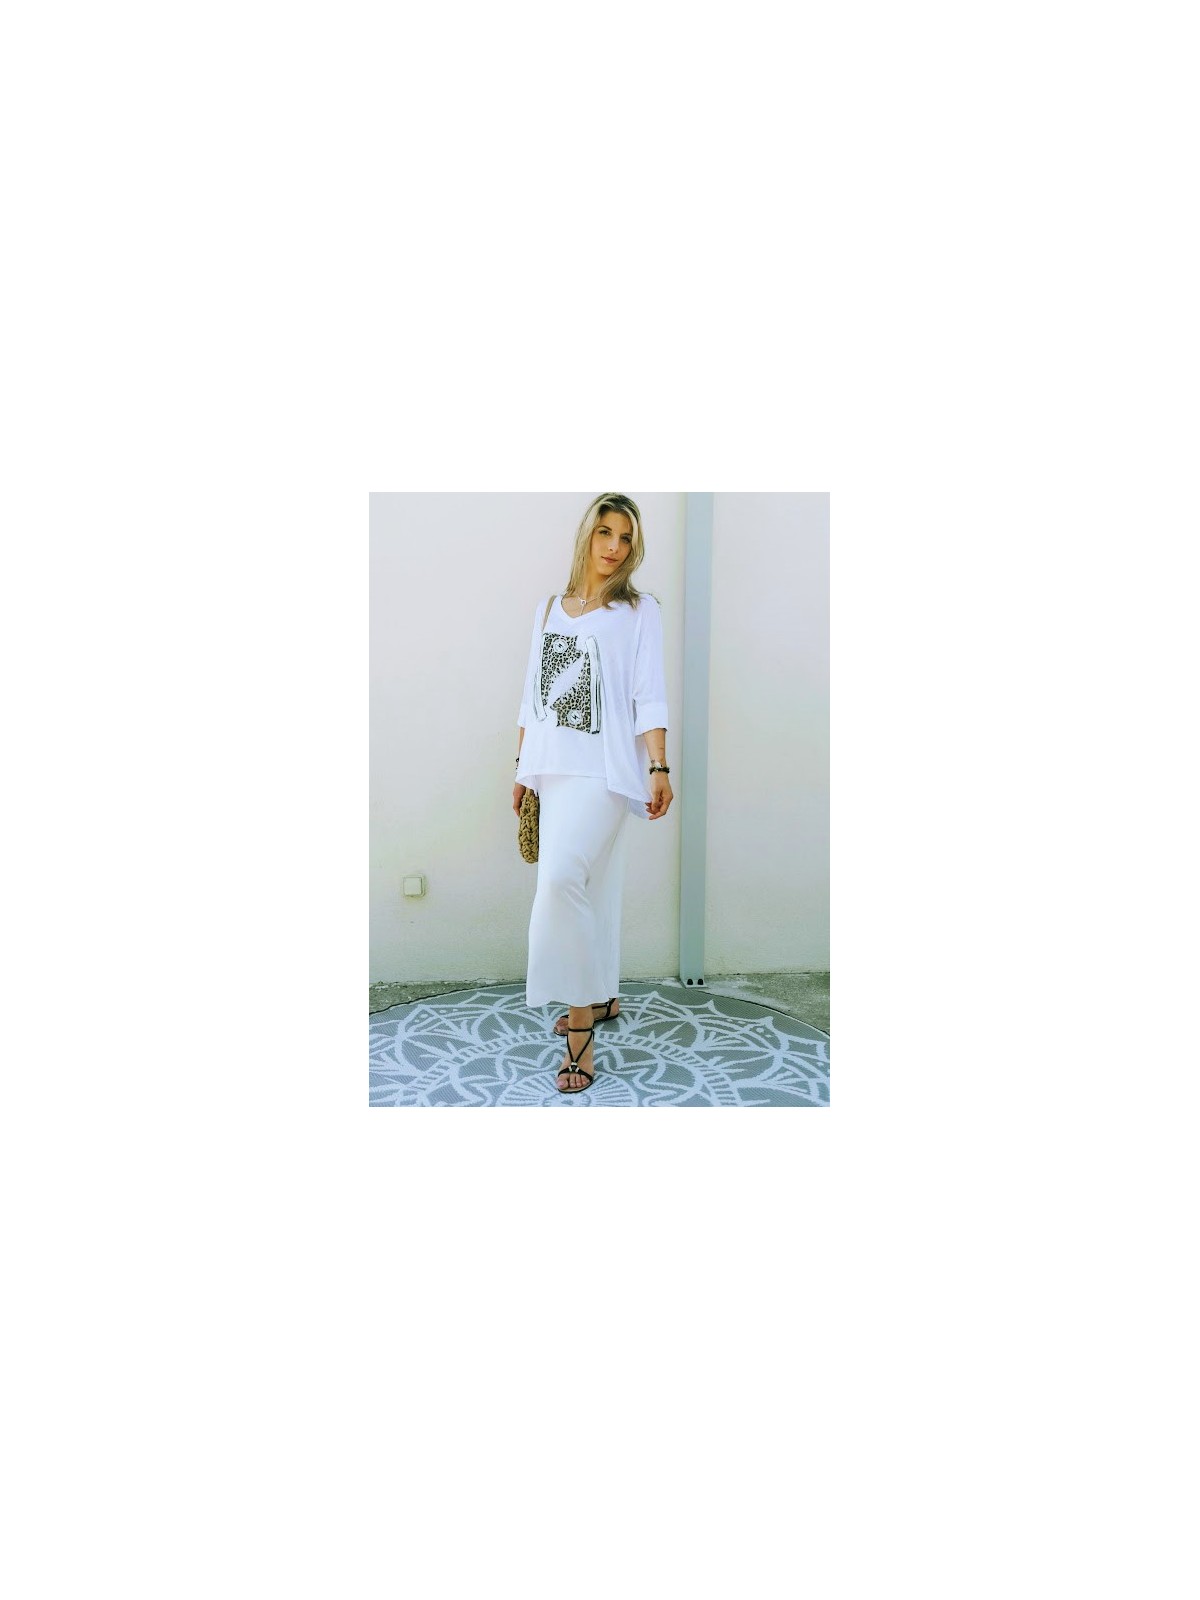 Jupe longue blanche avec effet satiné | 3 vue de face |  Tilleulmenthe boutique de mode femme en ligne